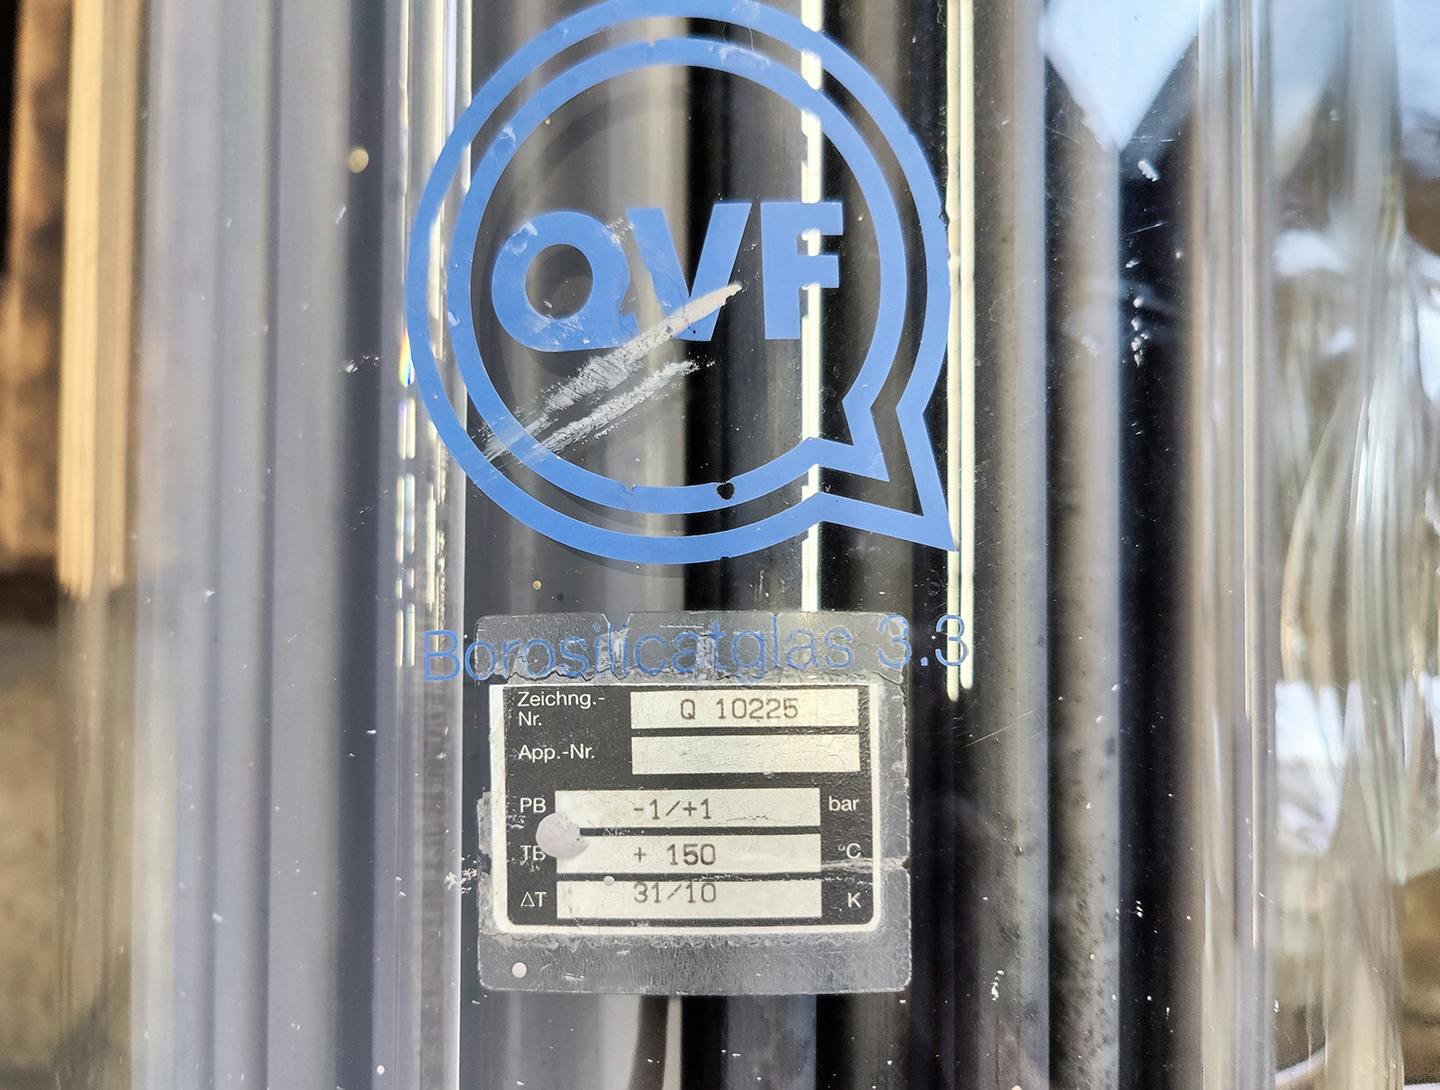 QVF Glasstechnik S-ROB71/300/SH/3SIC - 7,1 m² - Échangeur de température tubulaire - image 8